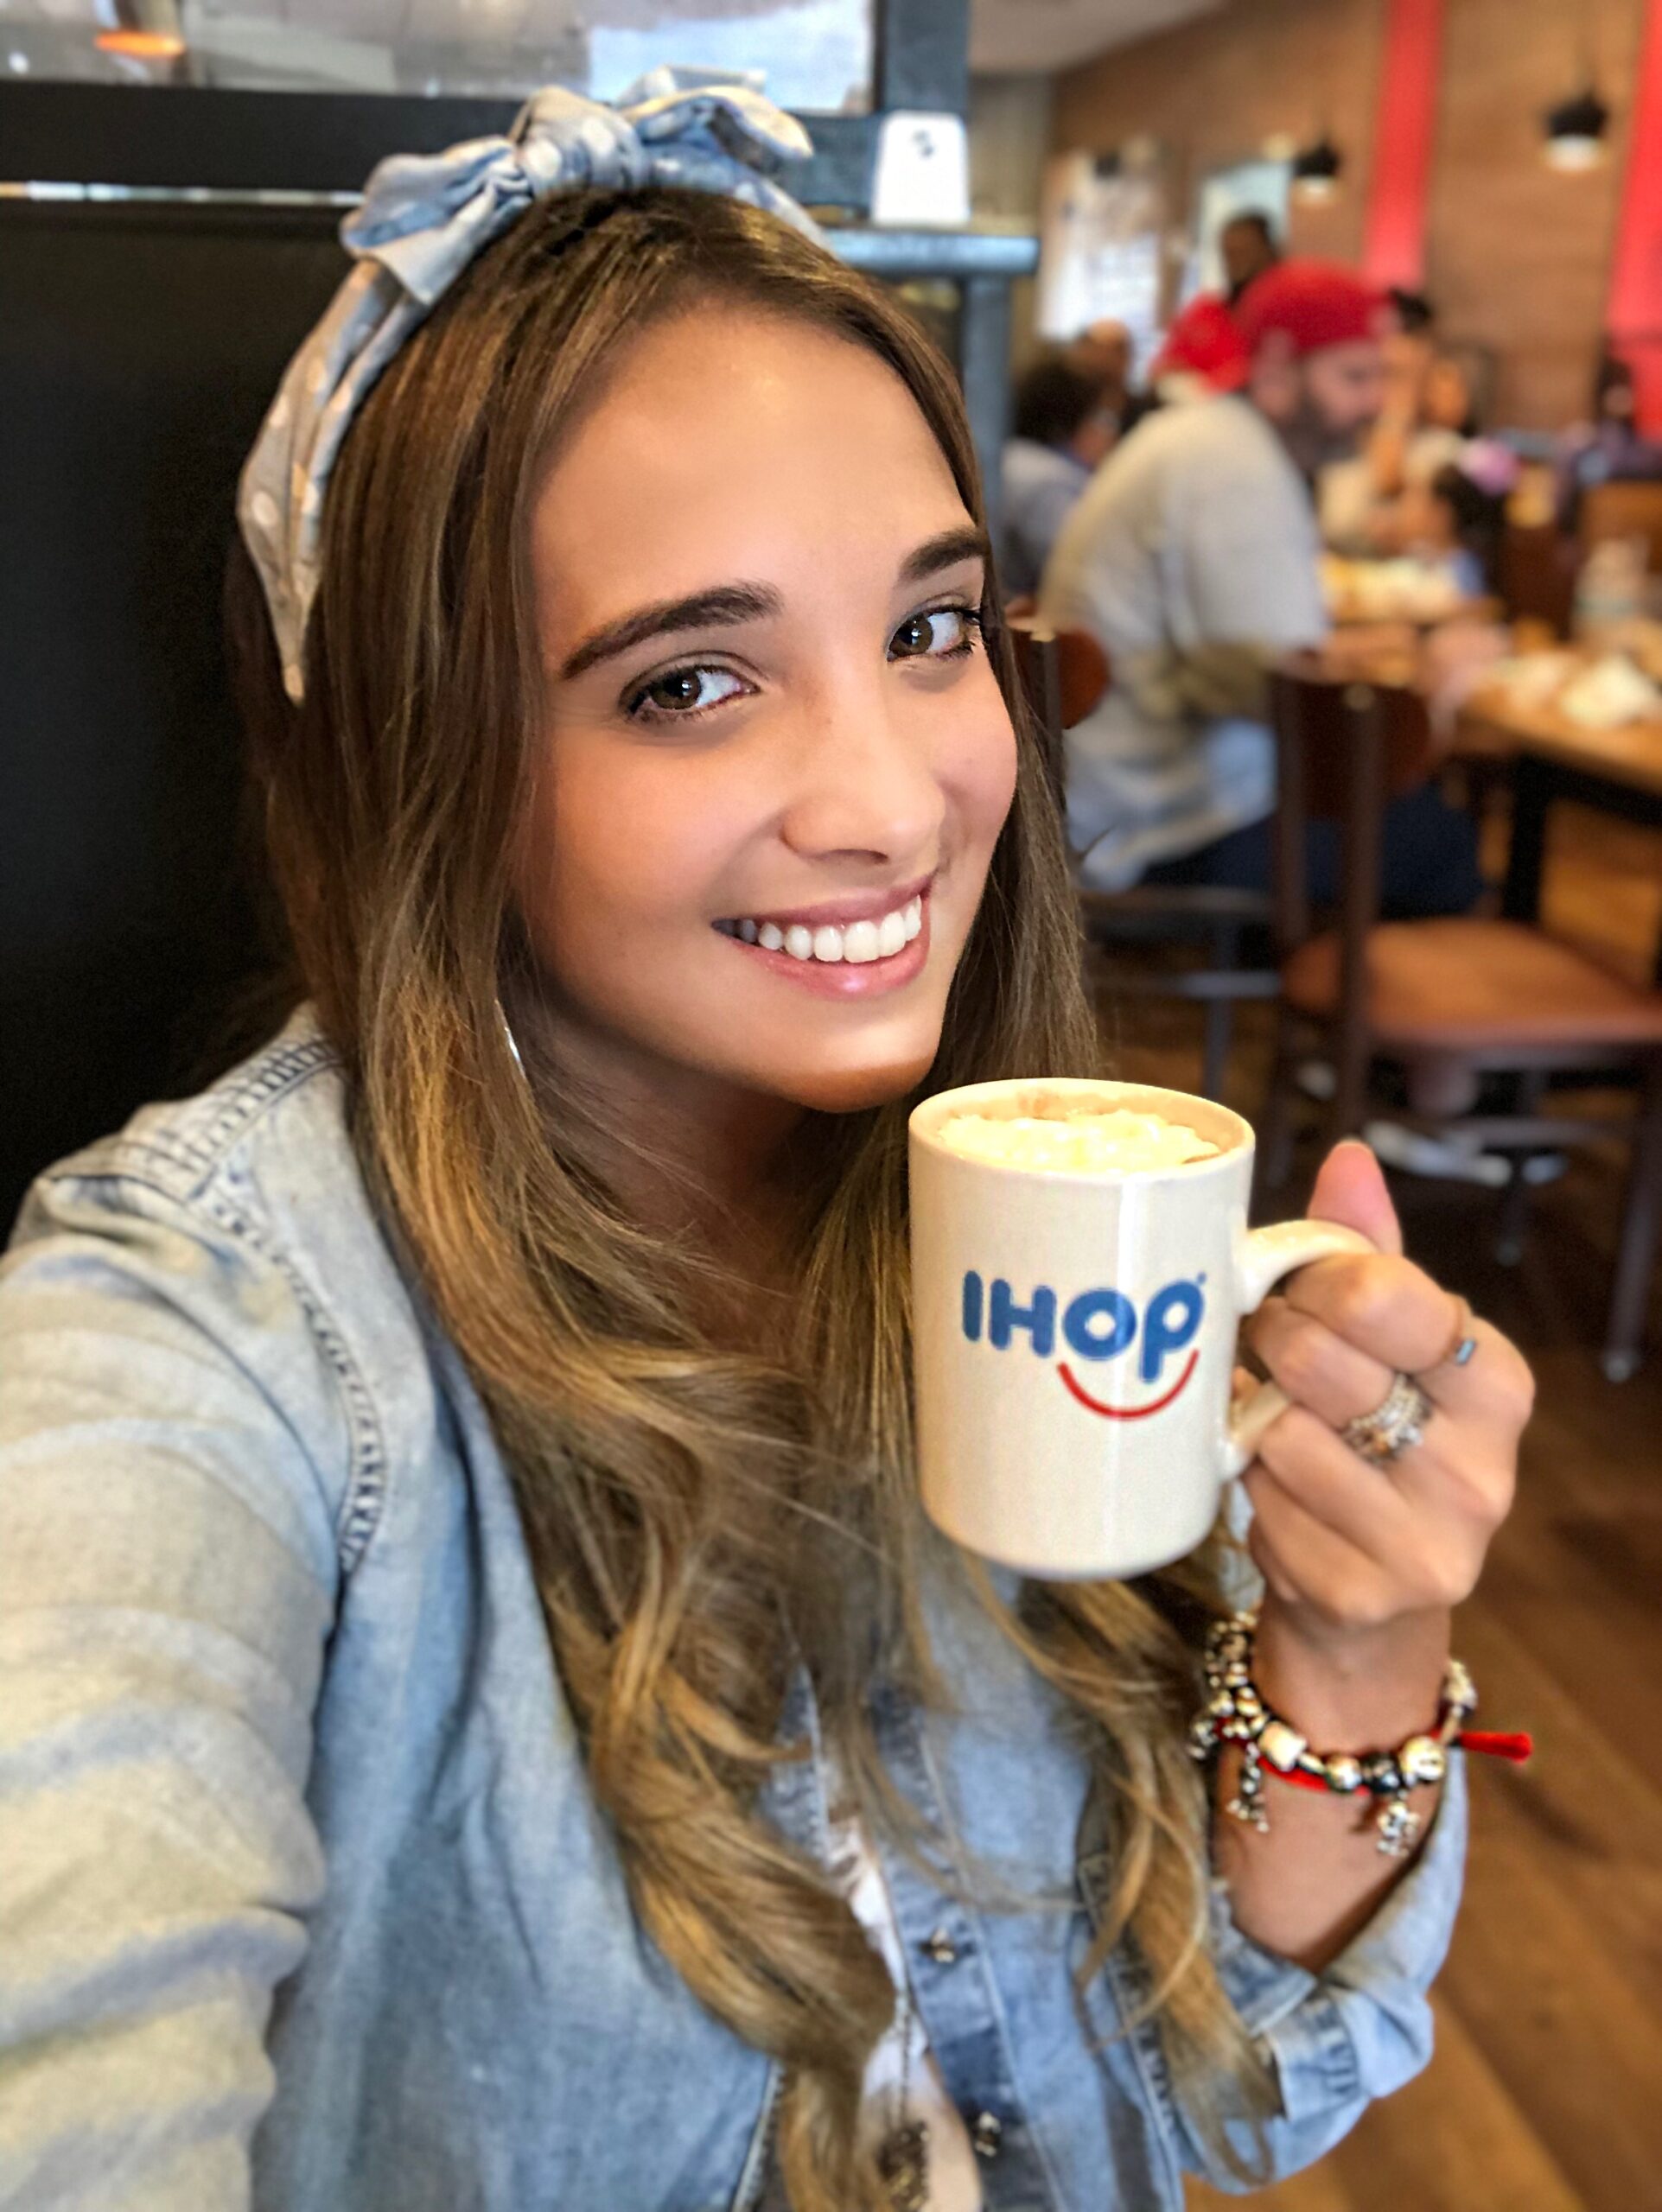 Ihop Orlando - Confira esse Café da Manhã Incrível